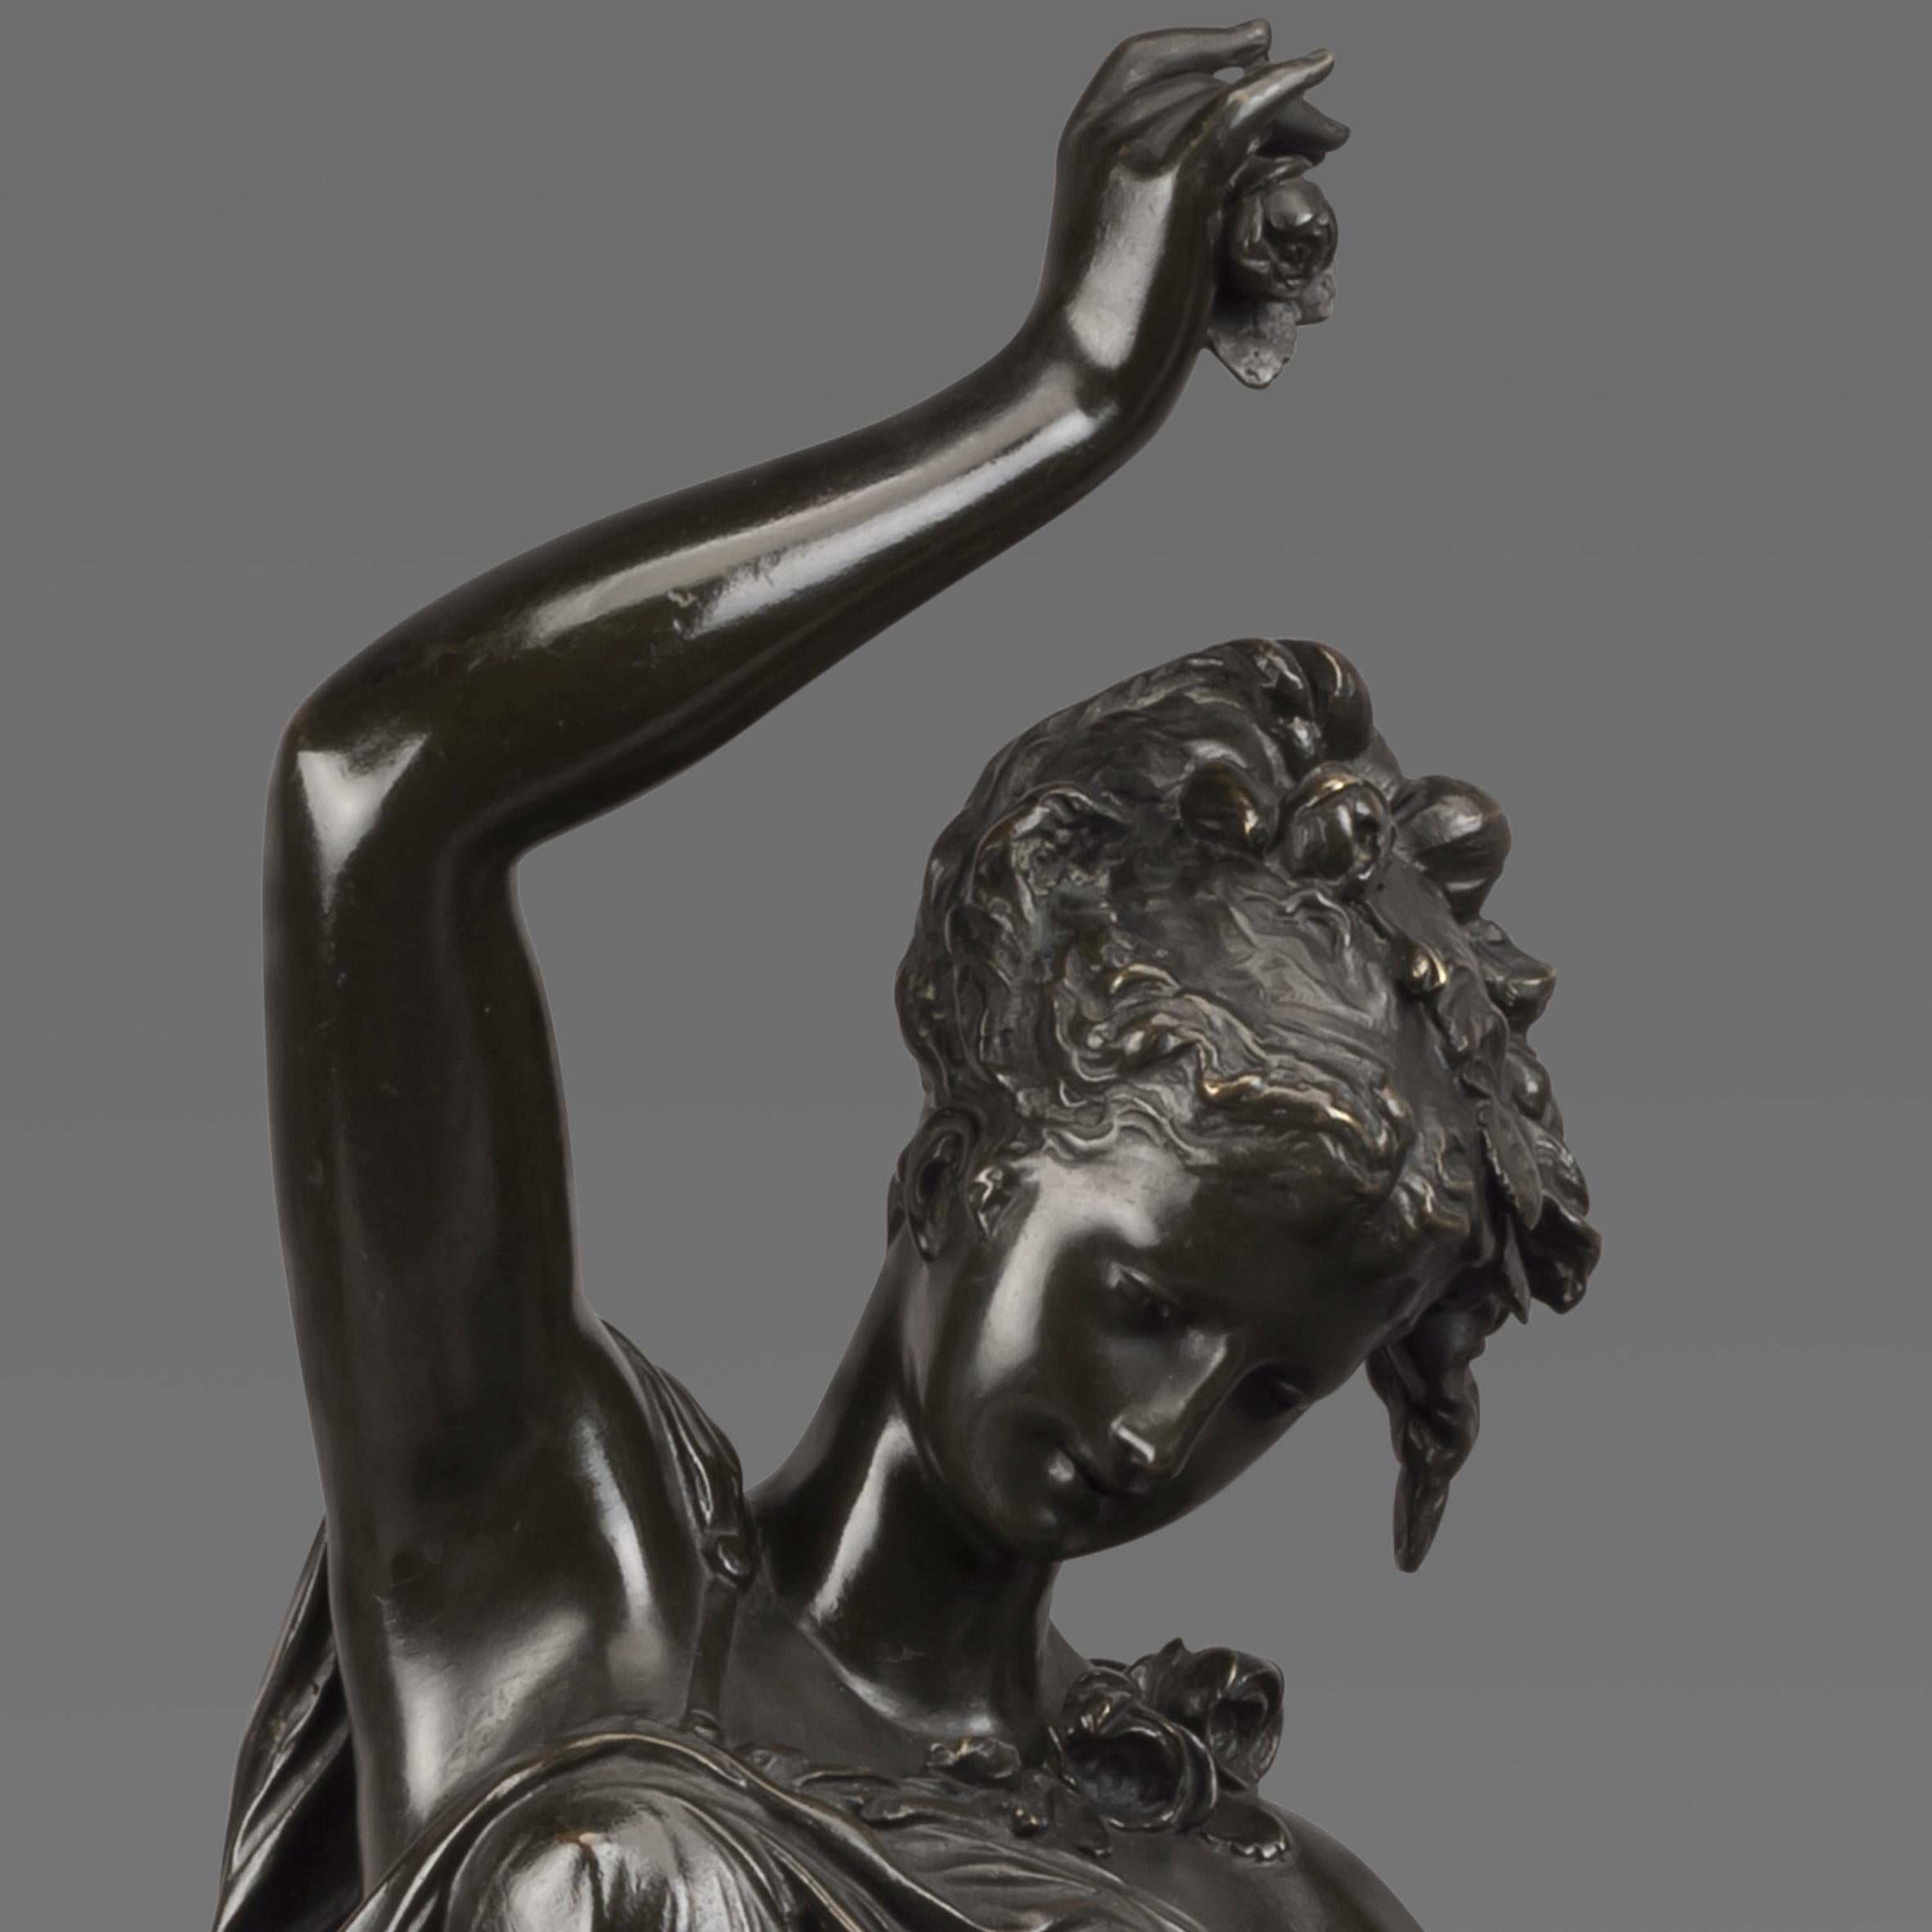 Belle Époque Le Printemps et L'Eté, Bronze Figures After Carrier-Belleuse. French, circa 1870